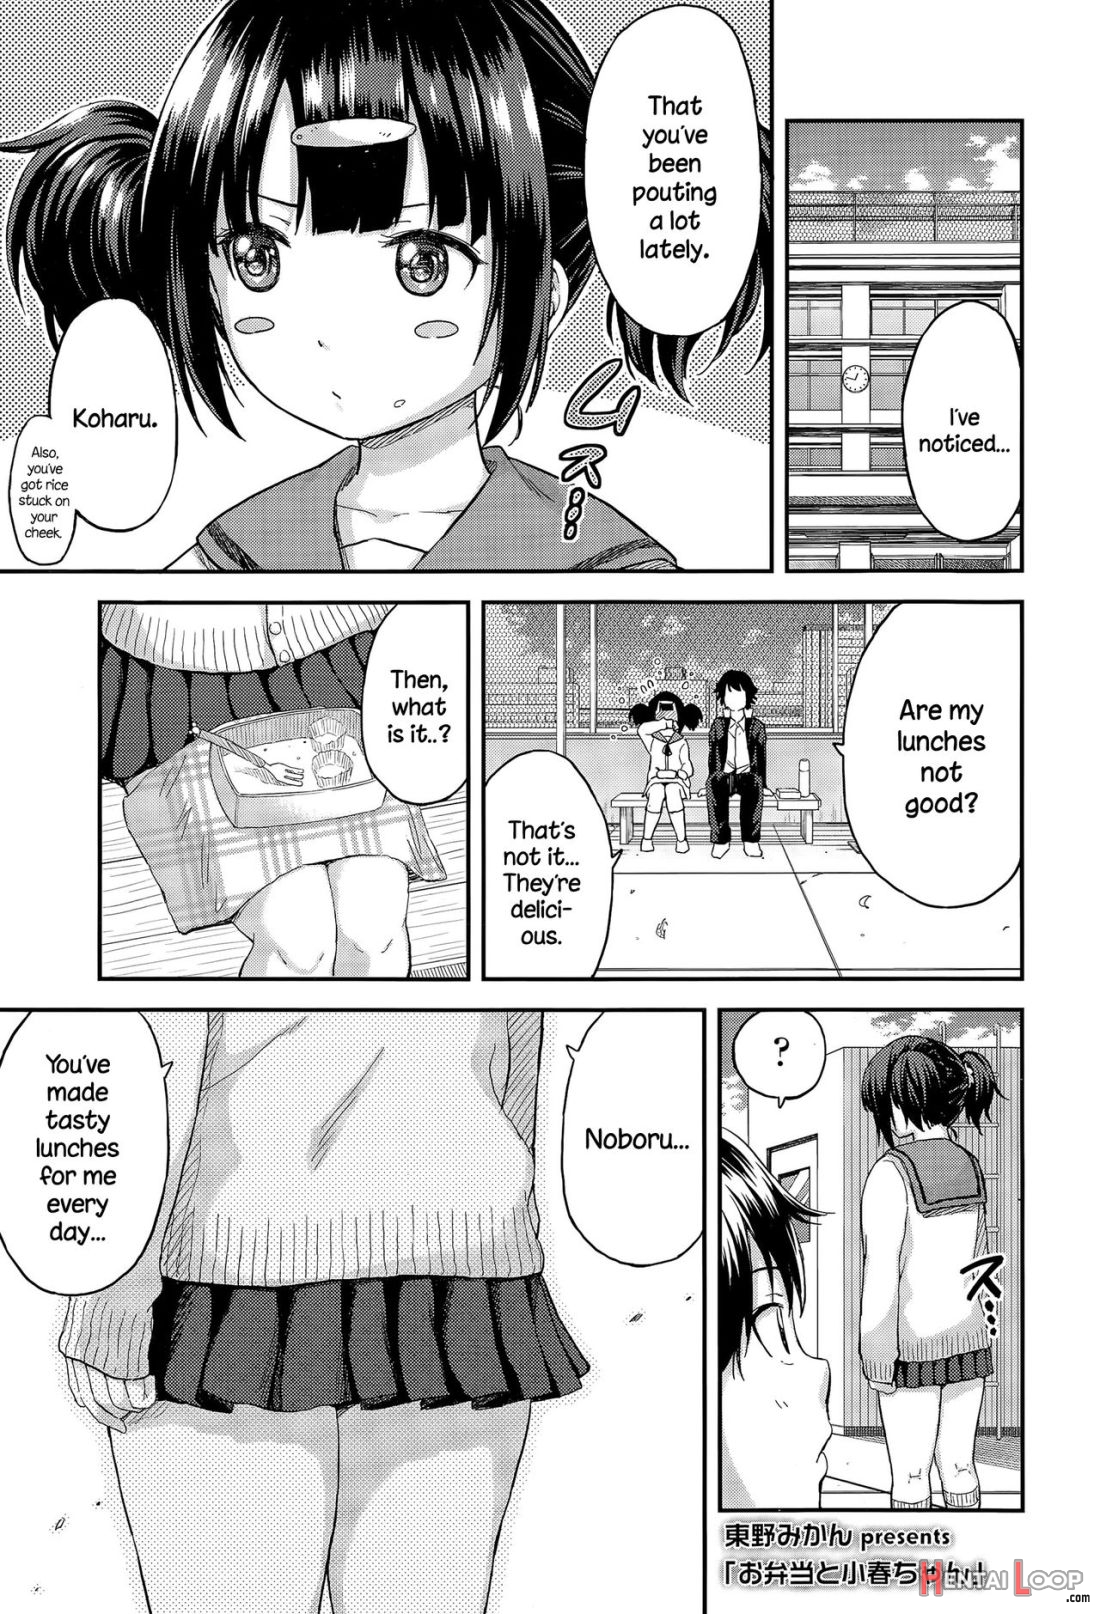 Obentou To Koharu-chan page 1